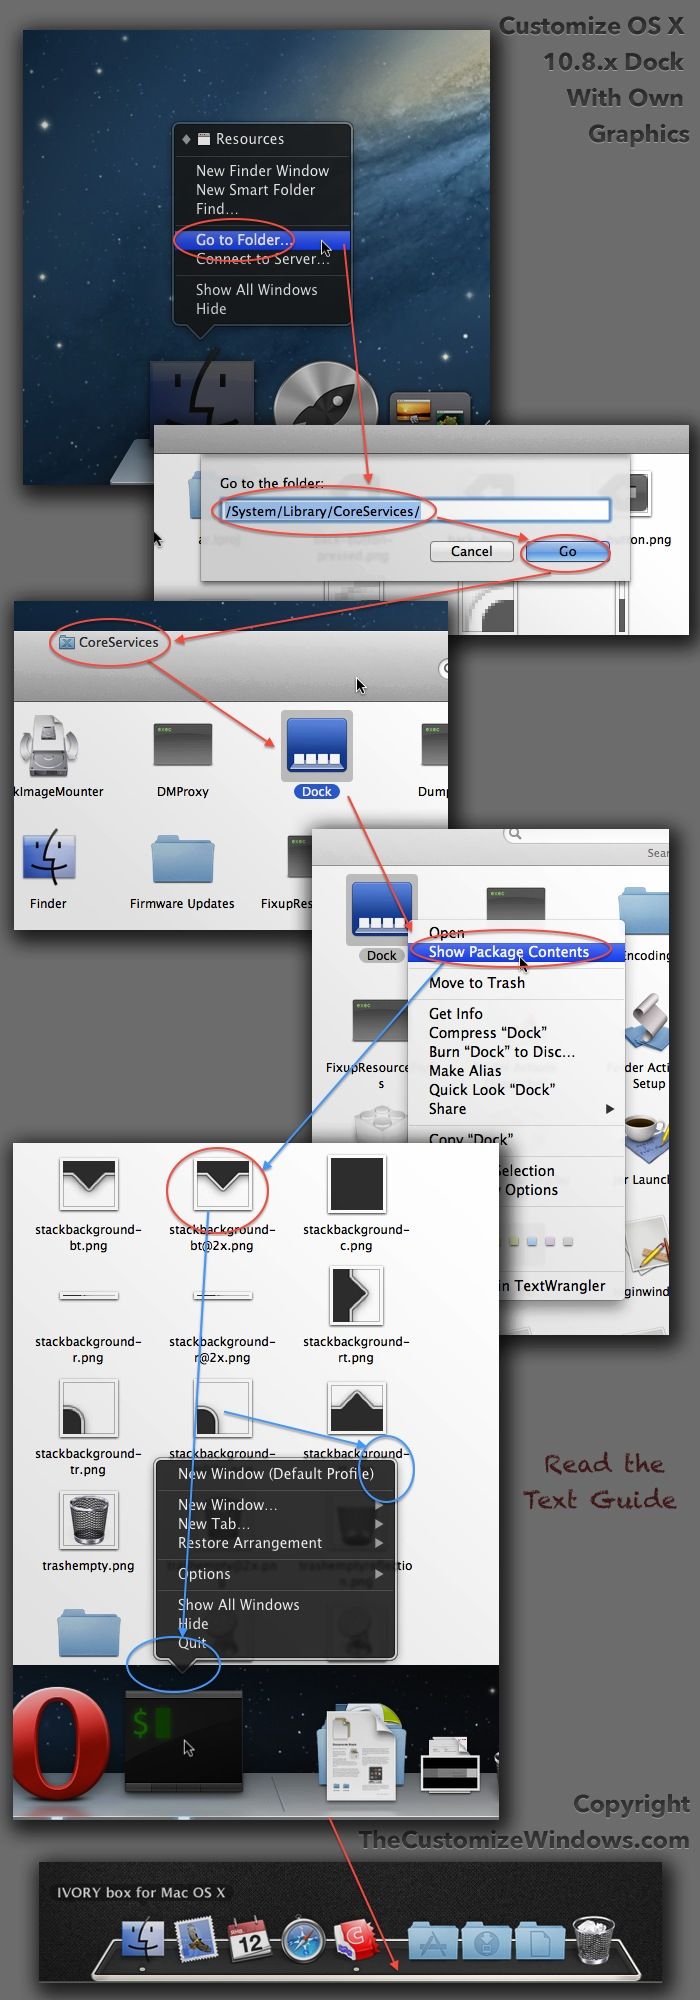 open windows programs on mac